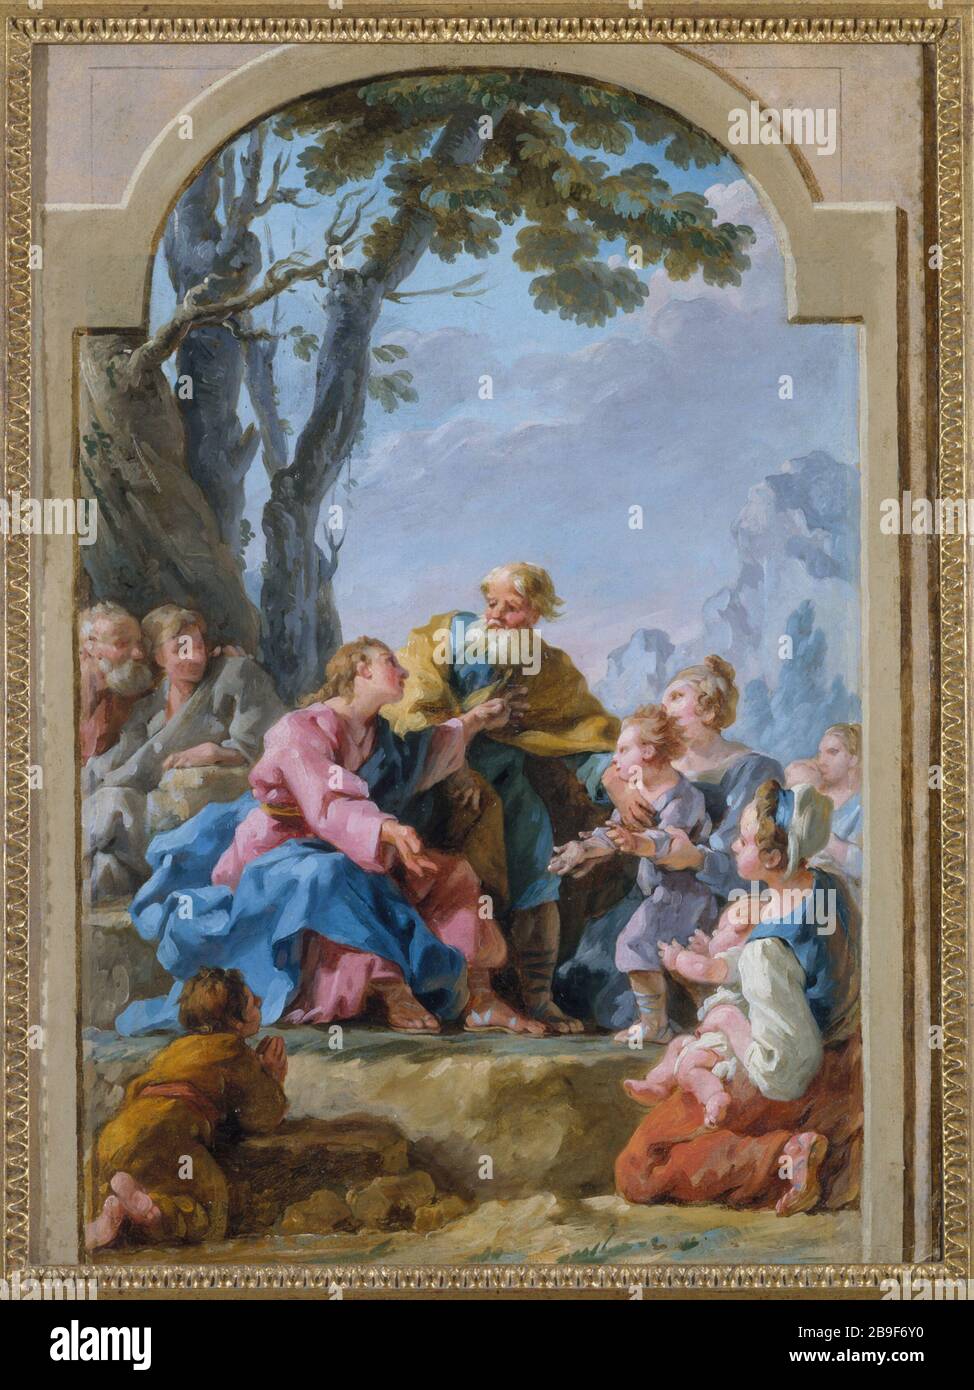 CRISTO E BAMBINI PICCOLI Noël Hallé (1711-1781). "Le Christ et les petits enfants". Huile sur papier marouflé sur cartone. Parigi, musée Carnavalet. Foto Stock